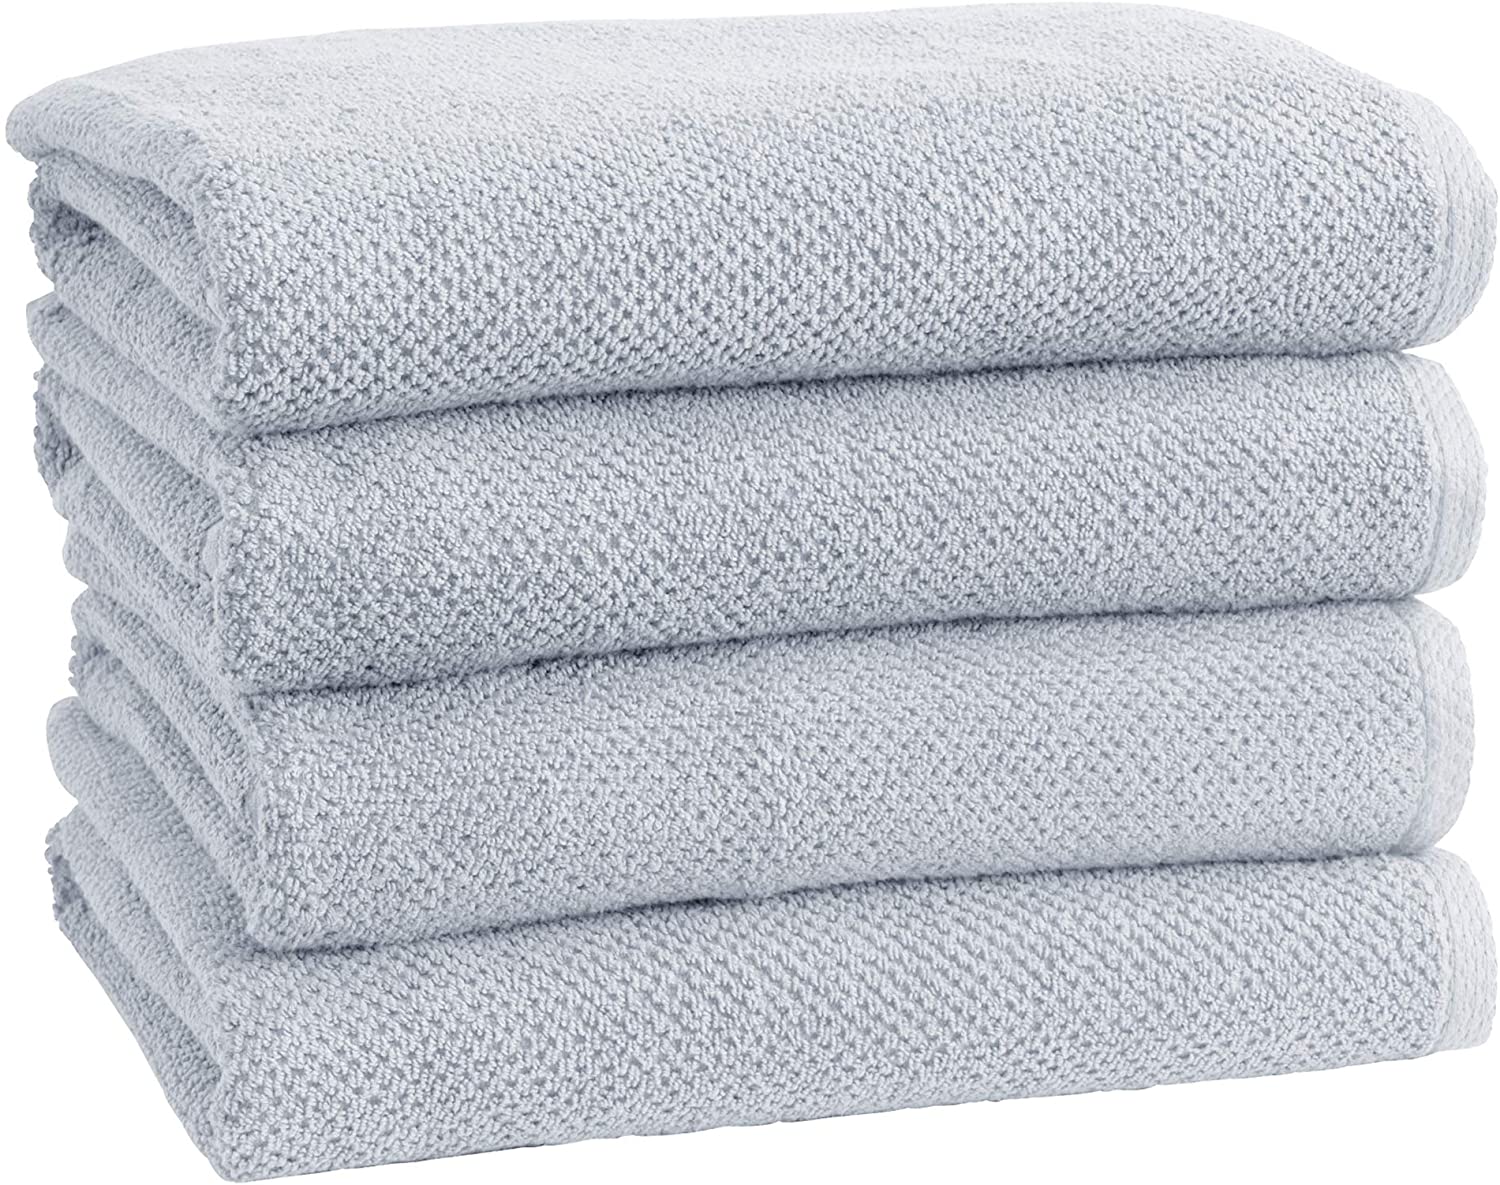 iDrop 100% Cotton Machine Washable Luxury Bath Towel Set Cotton Towels 6pcs 